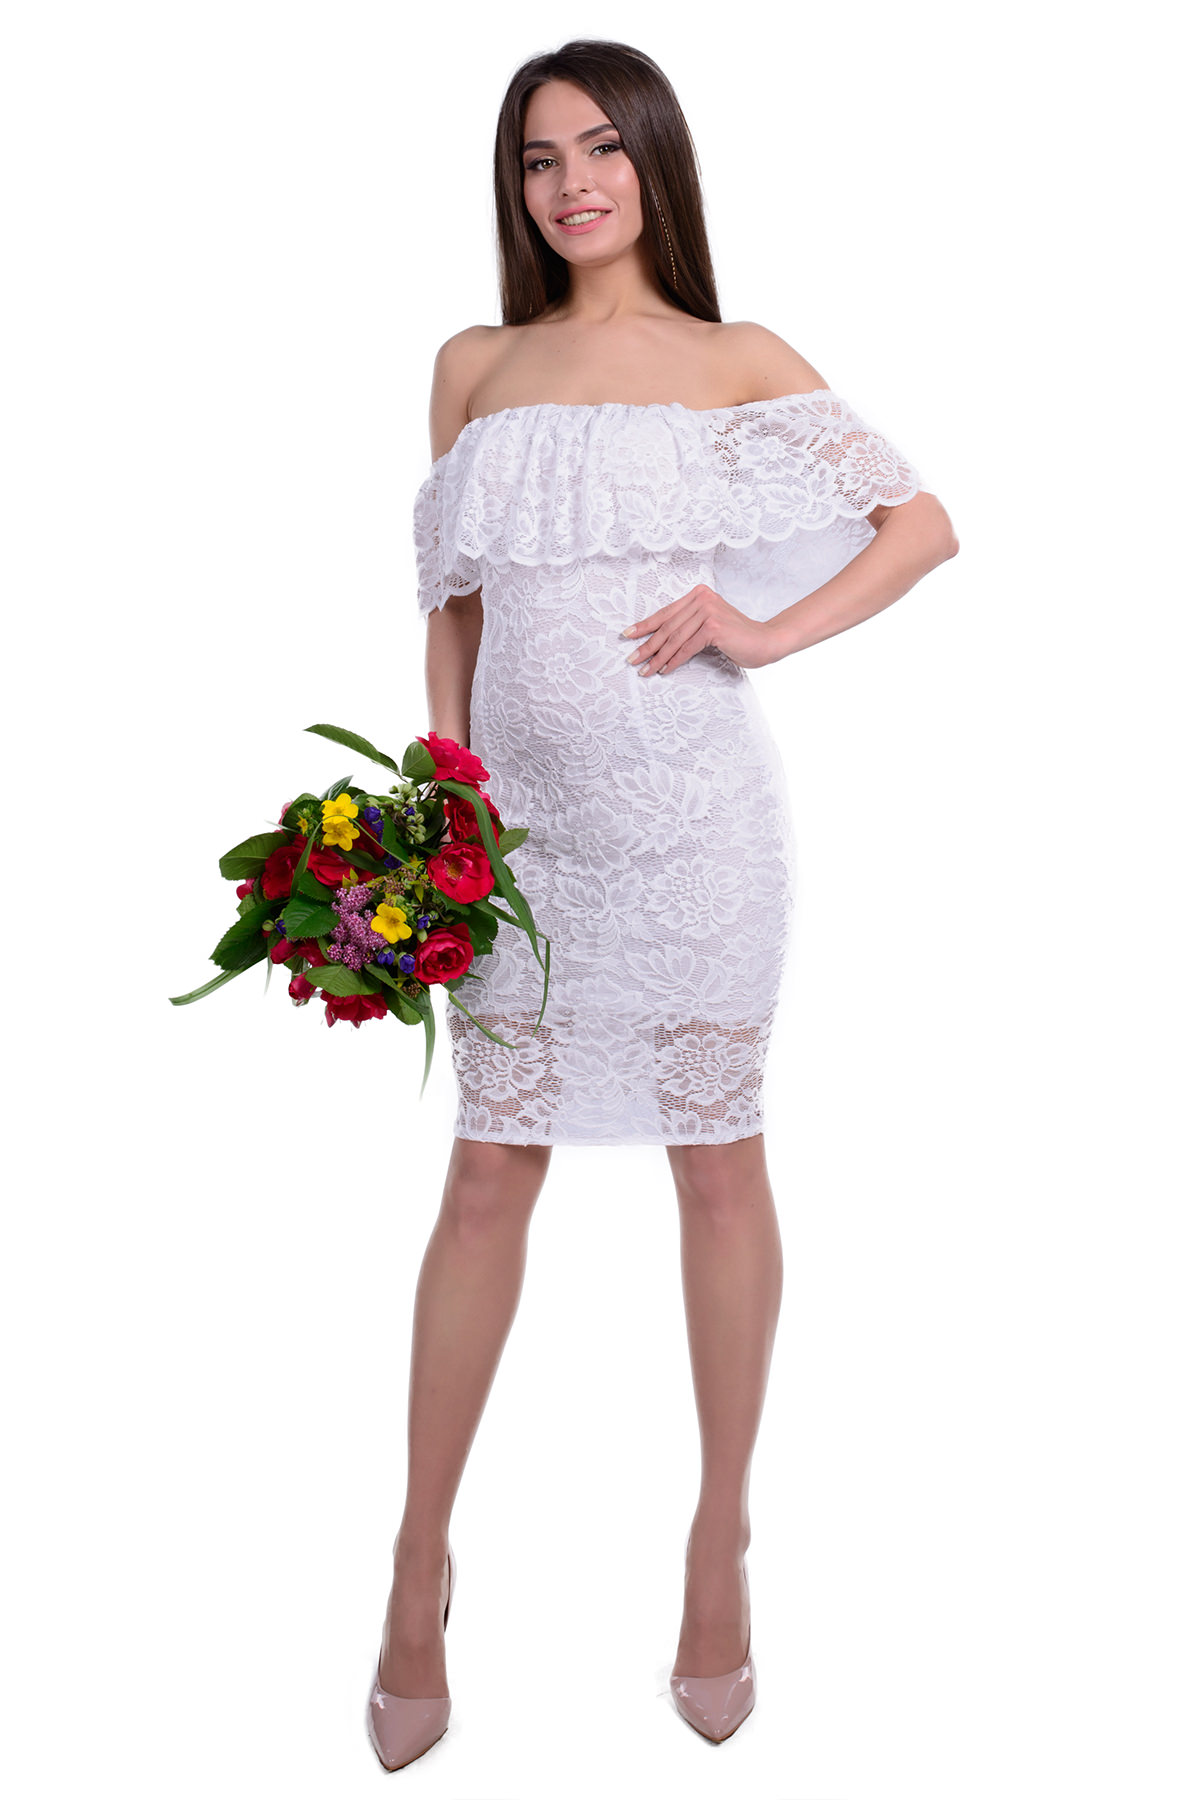 Женская одежда от производителя Modus Платье Блисс гипюр набивной